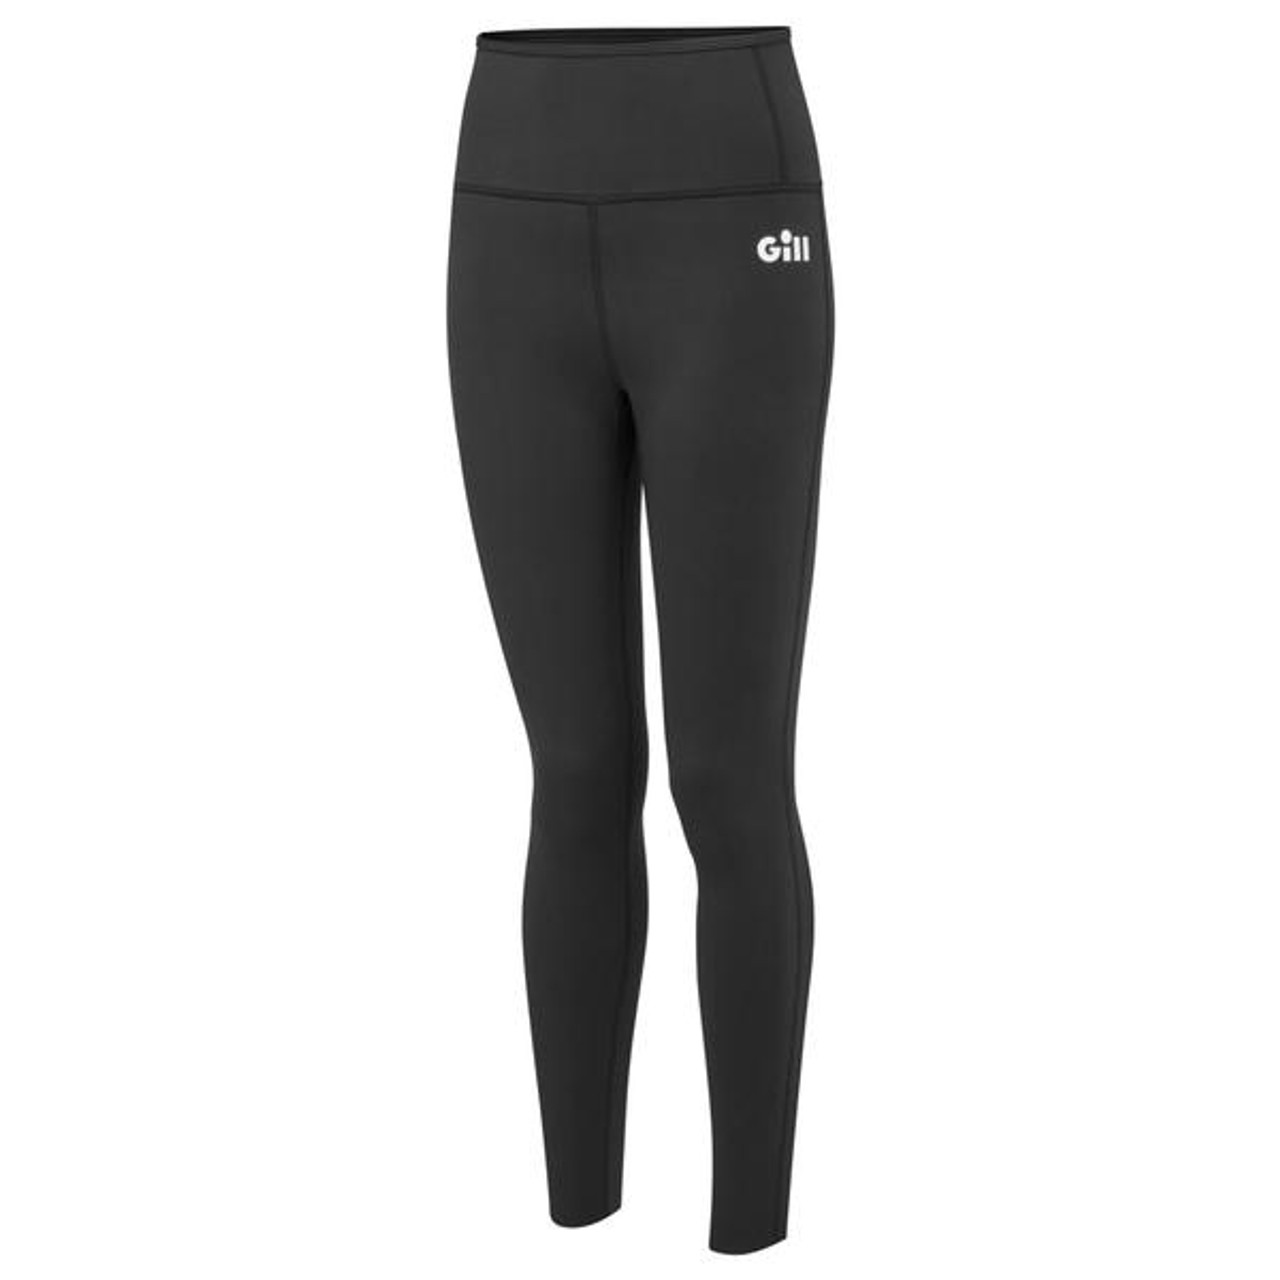 Gill Women's Pursuit Neoprene Leggings - Black (5033W-BLK01-8  5033W-BLK01-10 5033W-BLK01-12)